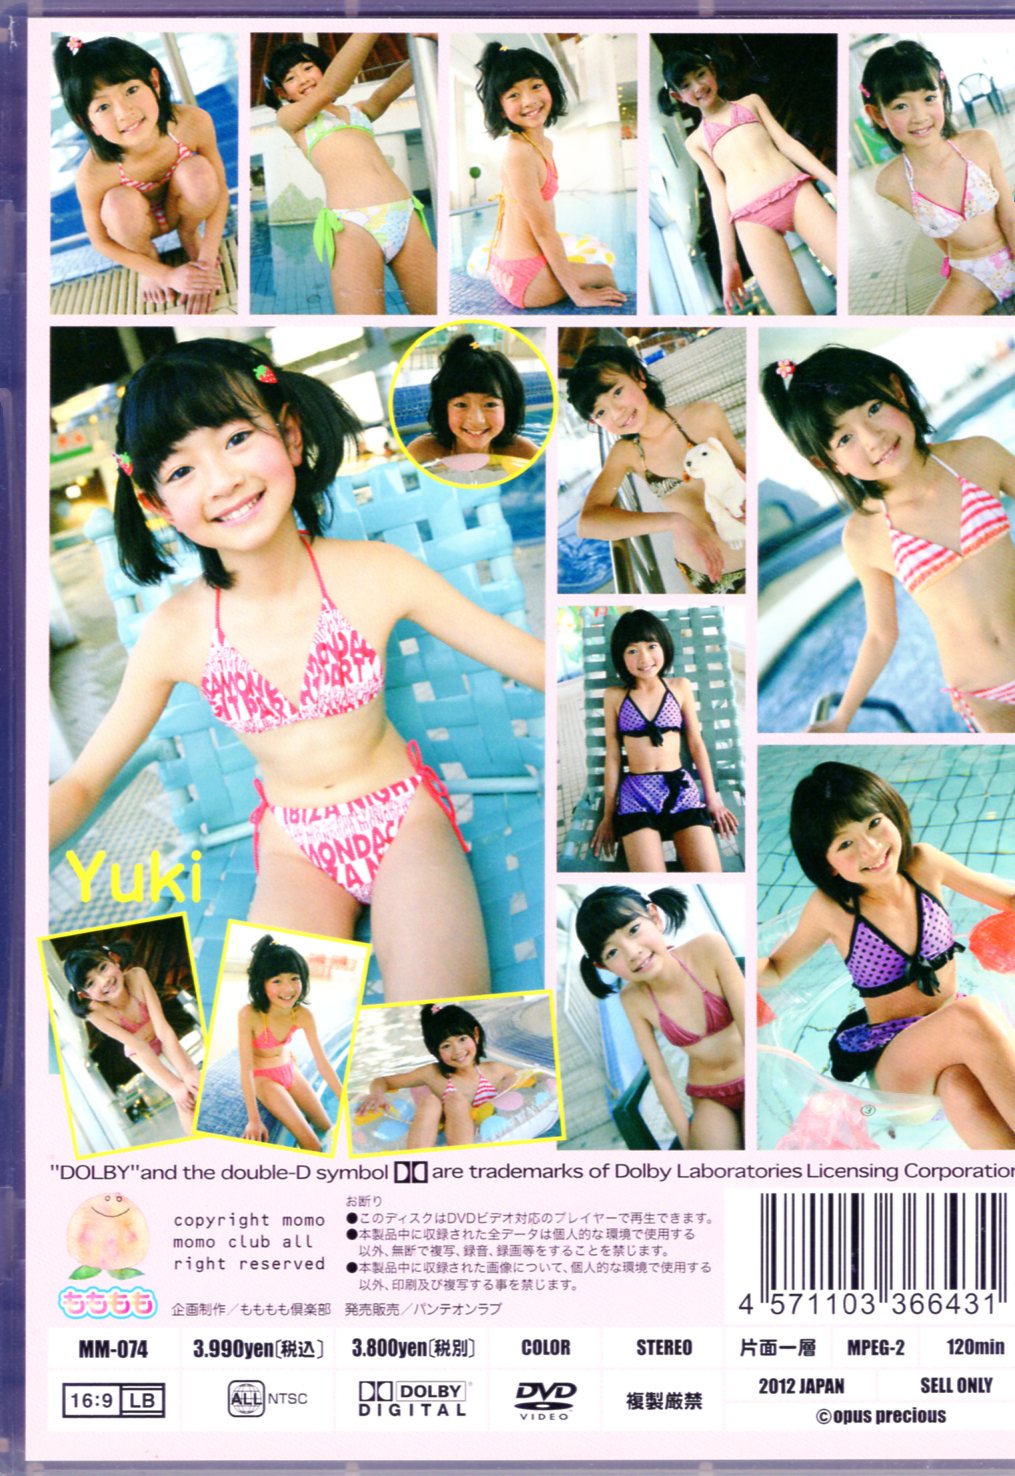 もももも vol.27 ゆみこちゃん MM-027 60min DVD ジュニアアイドル - DVD